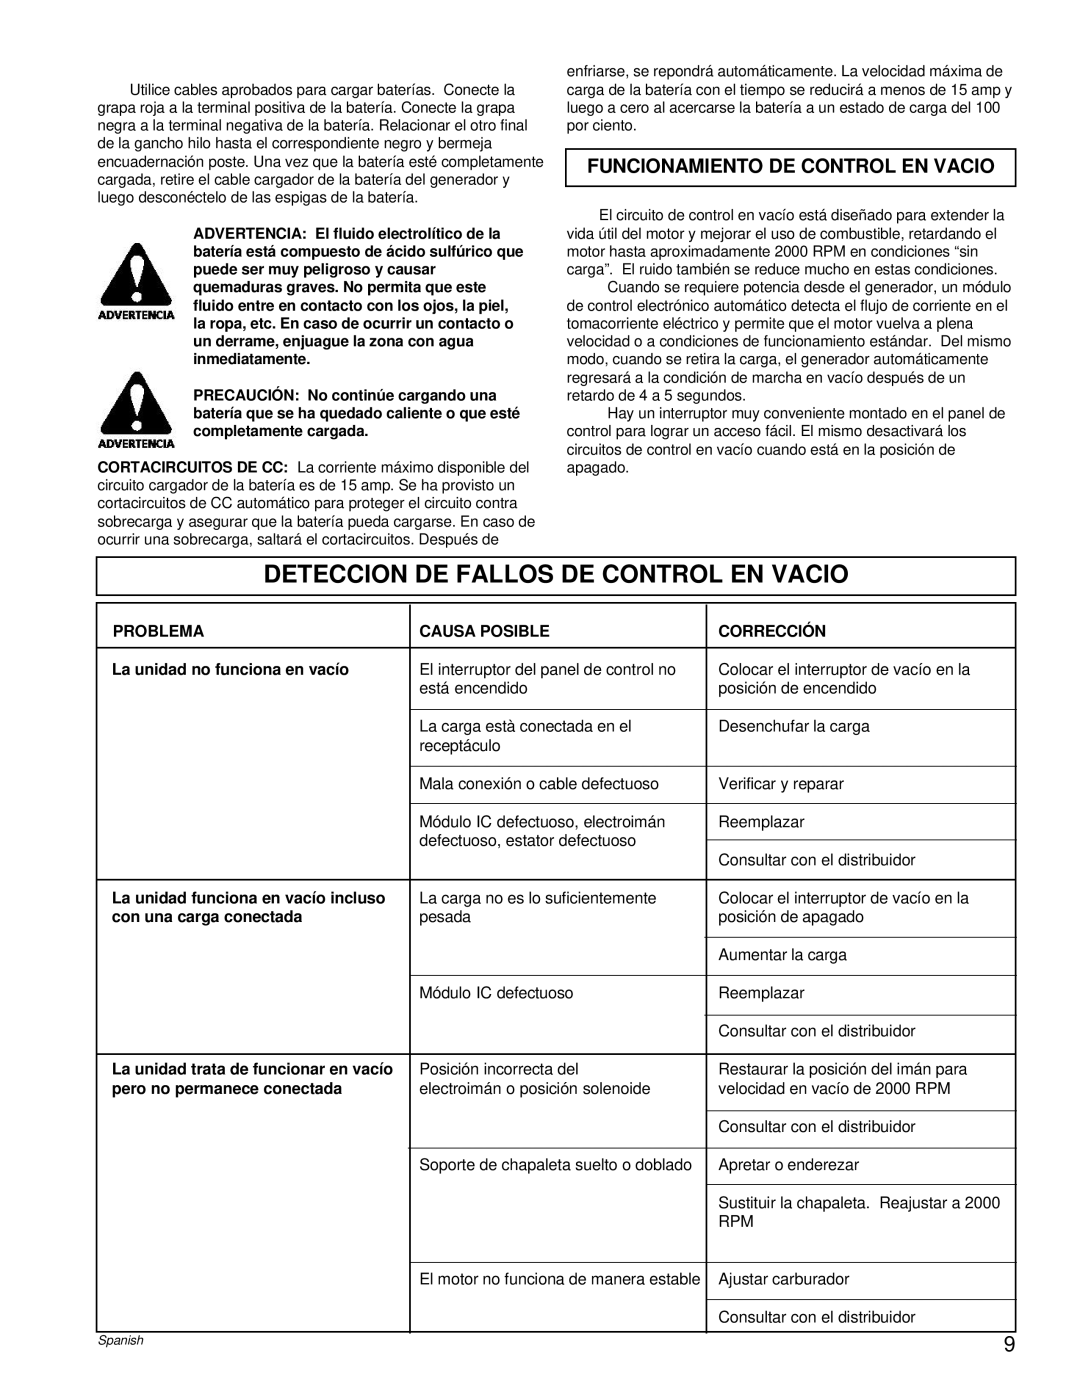 Powermate PM0496504.17 manual Deteccion De Fallos De Control En Vacio, Funcionamiento De Control En Vacio 